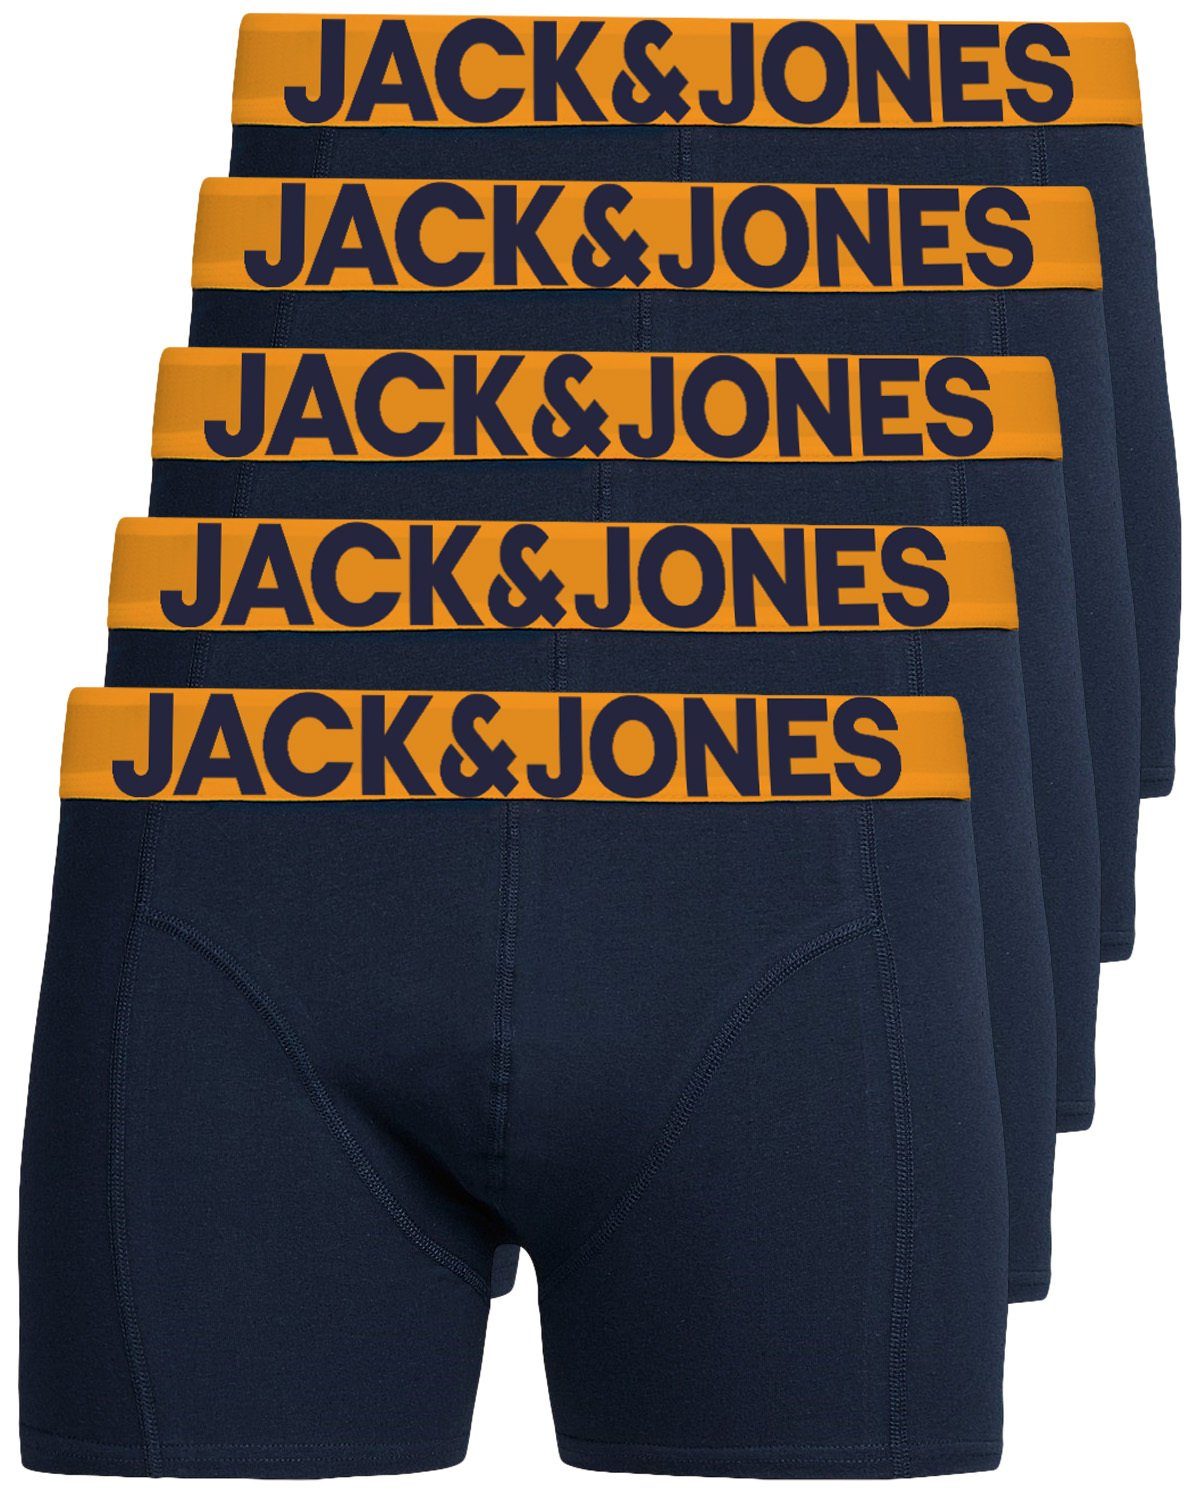 Jack & Jones Boxershorts Solid (5-St., 5er Pack) gute Passform durch elastische Baumwollqualität navy